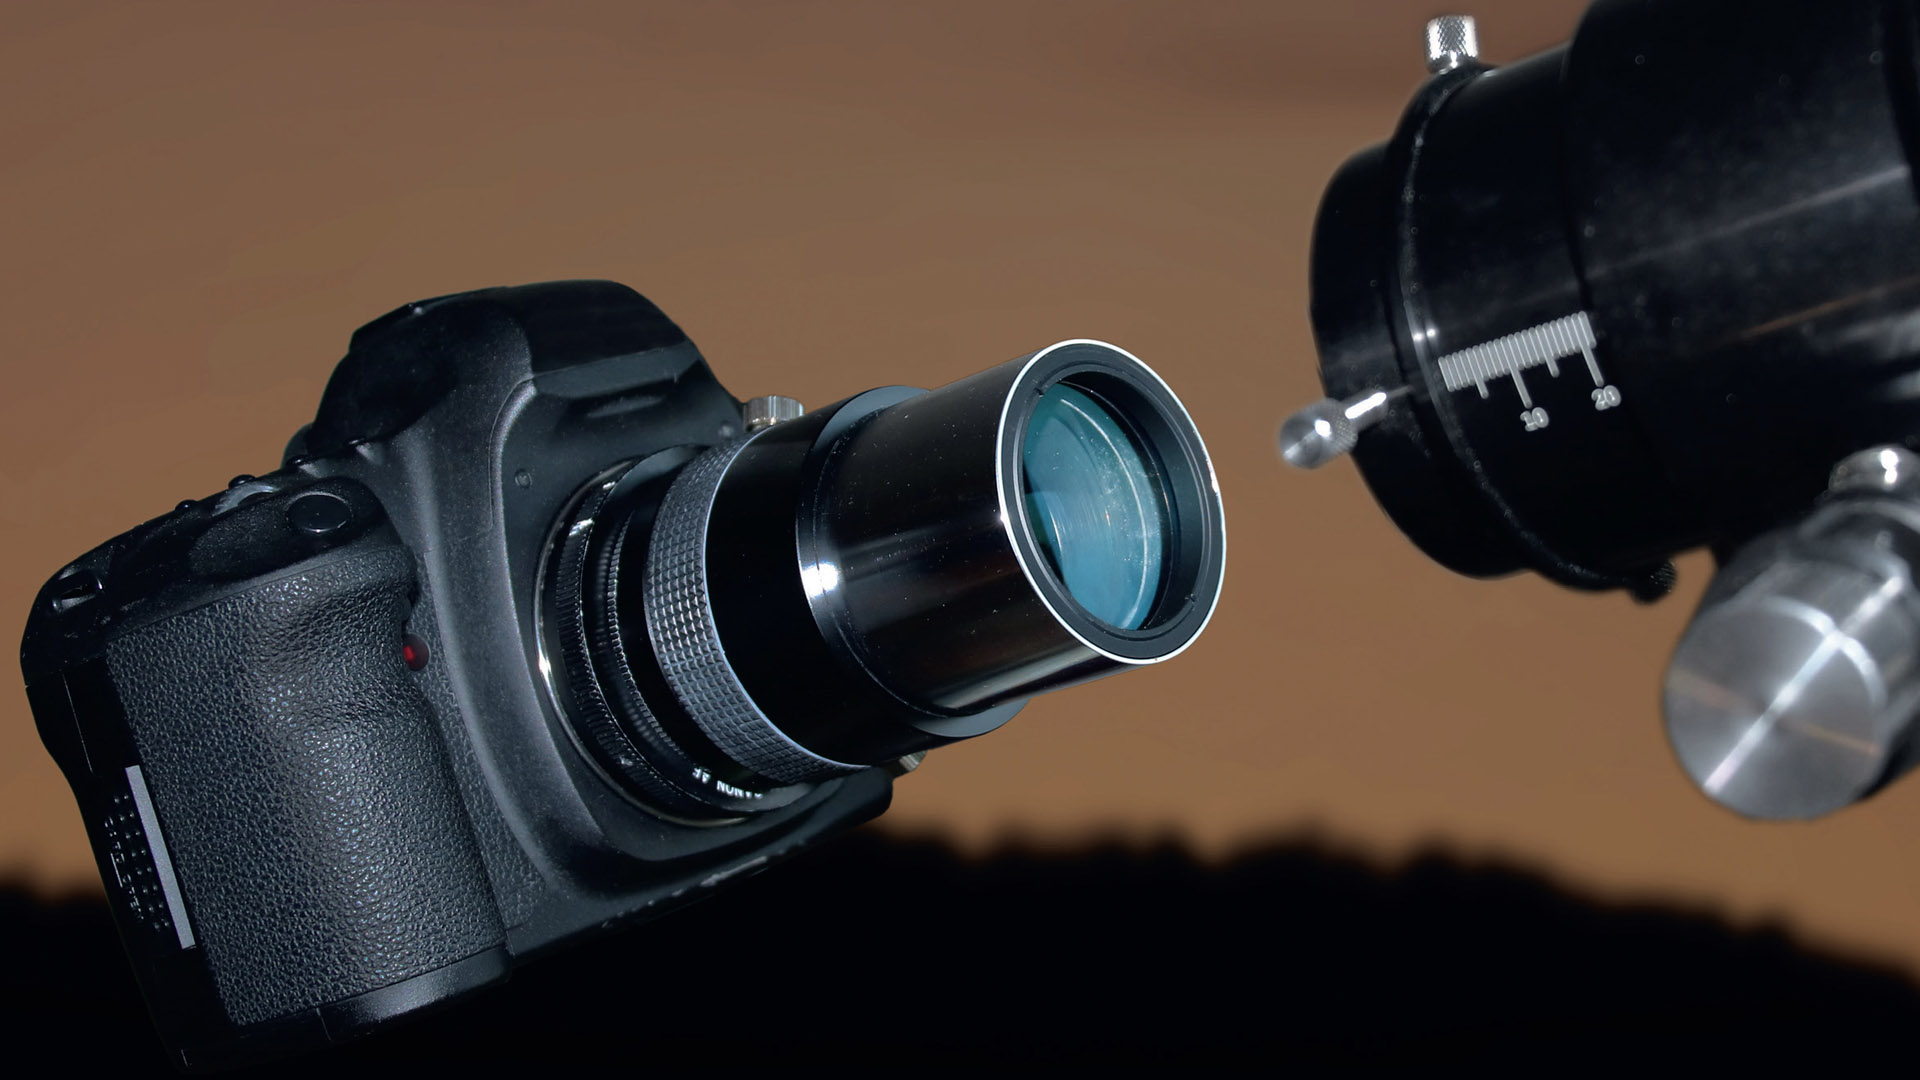 Reductoarele sunt sisteme de lentile destinate reducerii distanței focale a telescoapelor și sunt disponibile în diferite versiuni și cu factori de reducție diferiți. M. Weigand